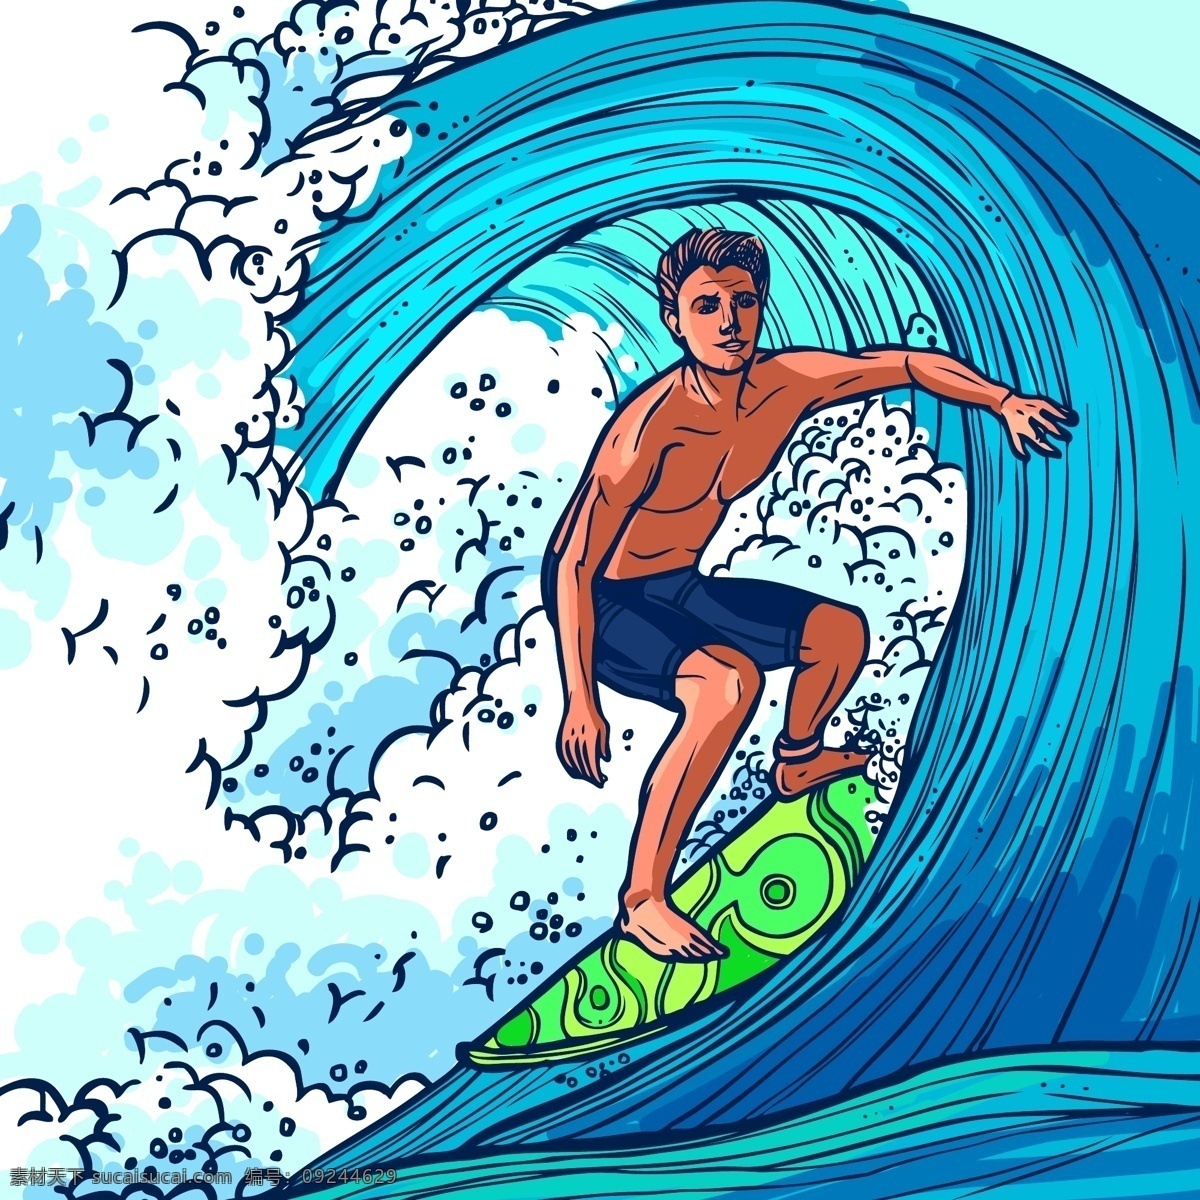 冲浪素材 大海 浪花 海浪 海水 男人 冲浪板 旅游 设计素材 背景图片 海洋风光 卡通风景